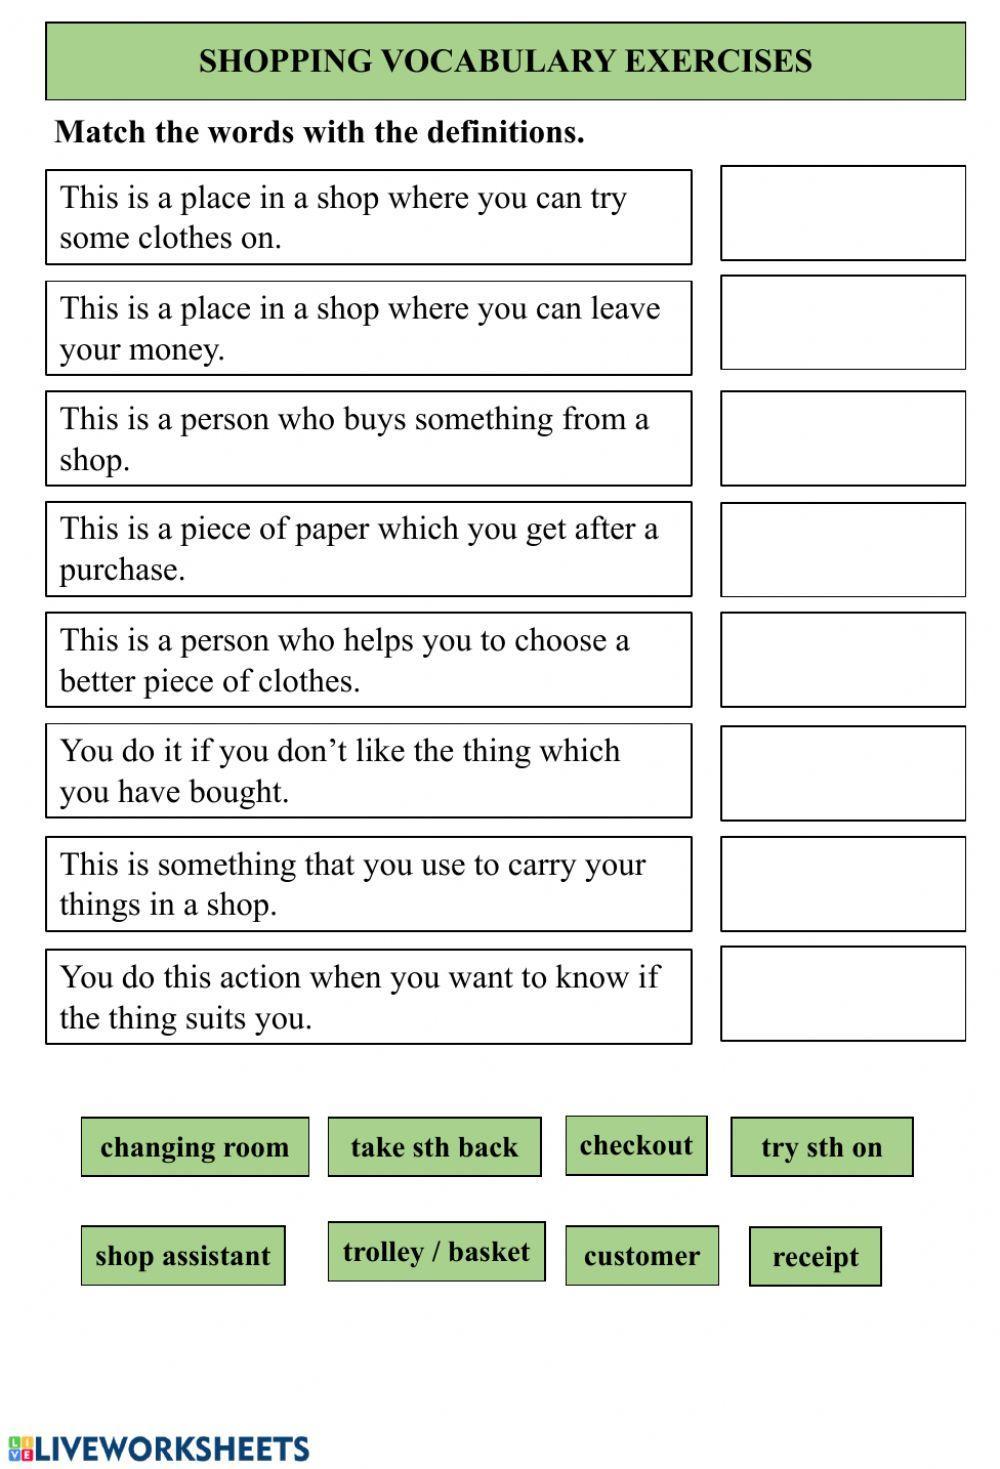 Shopping vocabulary exercise